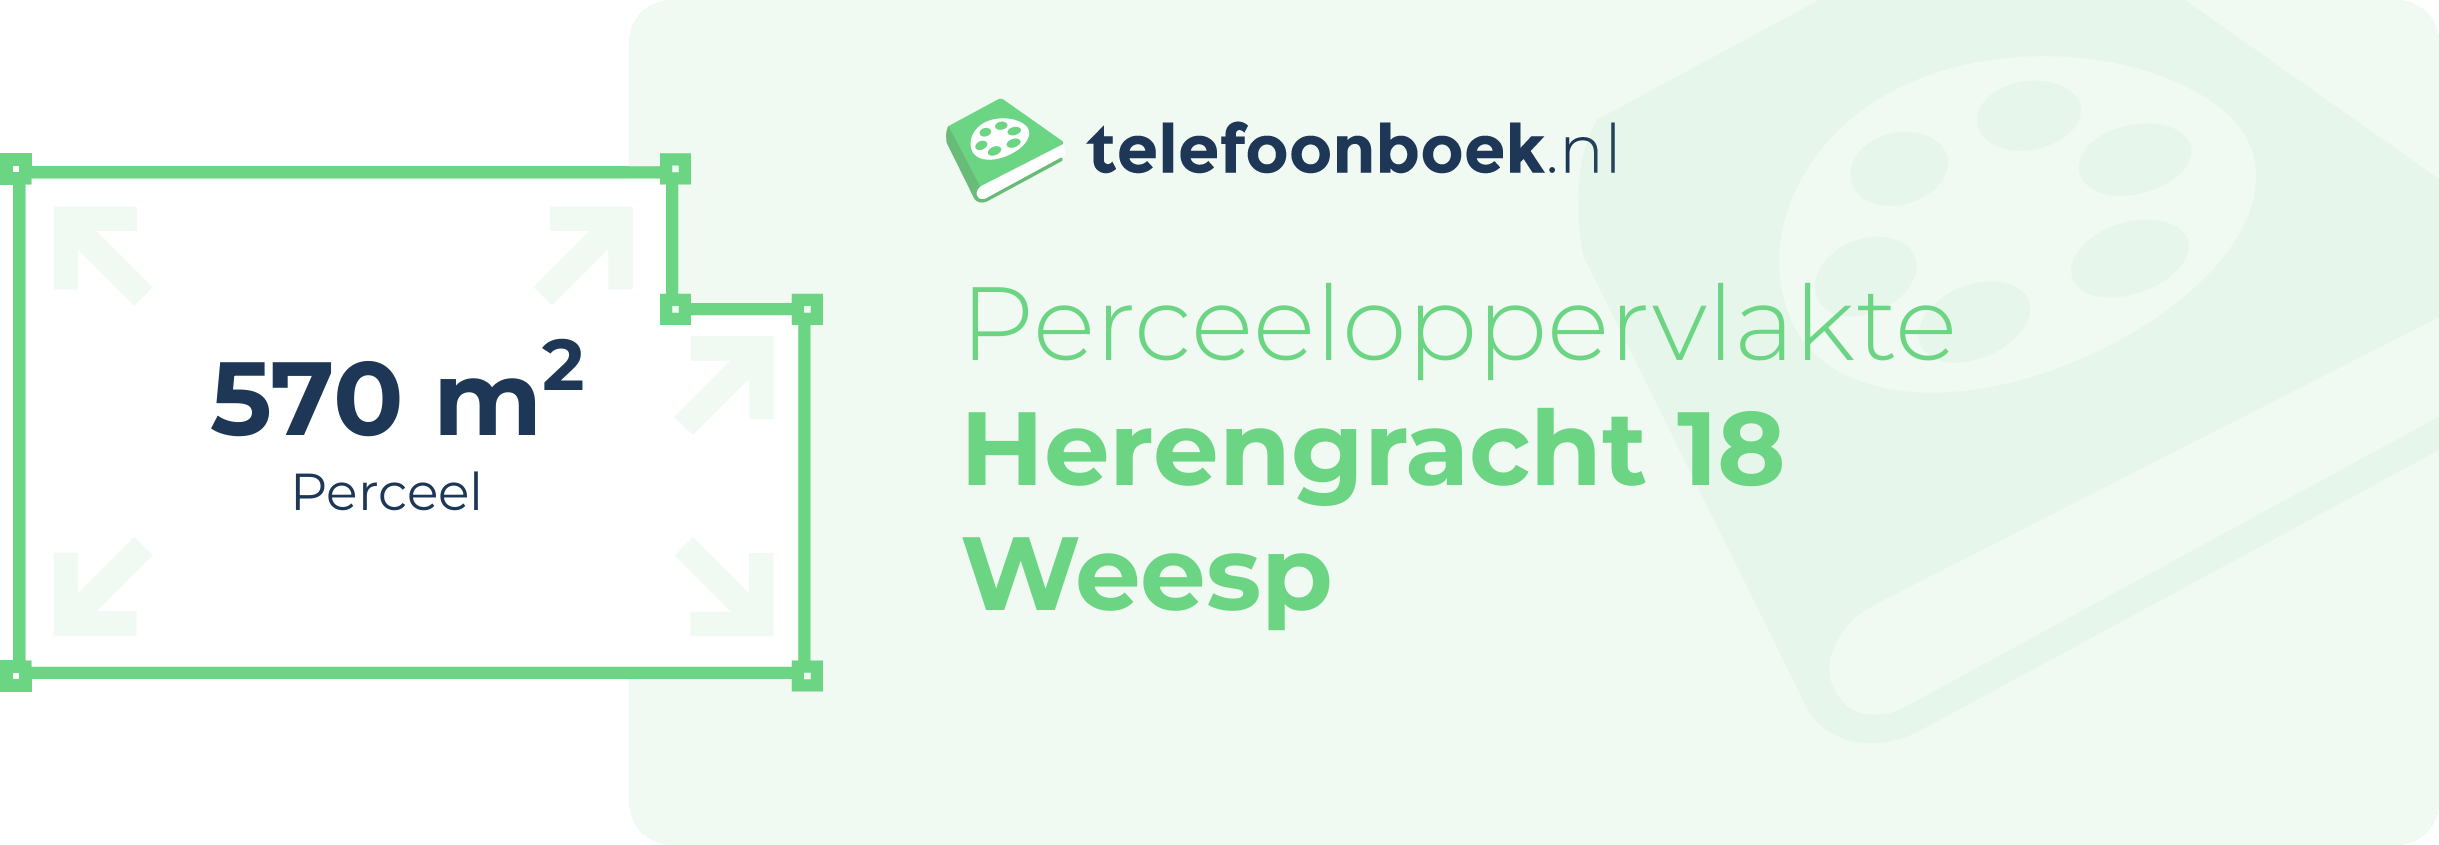 Perceeloppervlakte Herengracht 18 Weesp